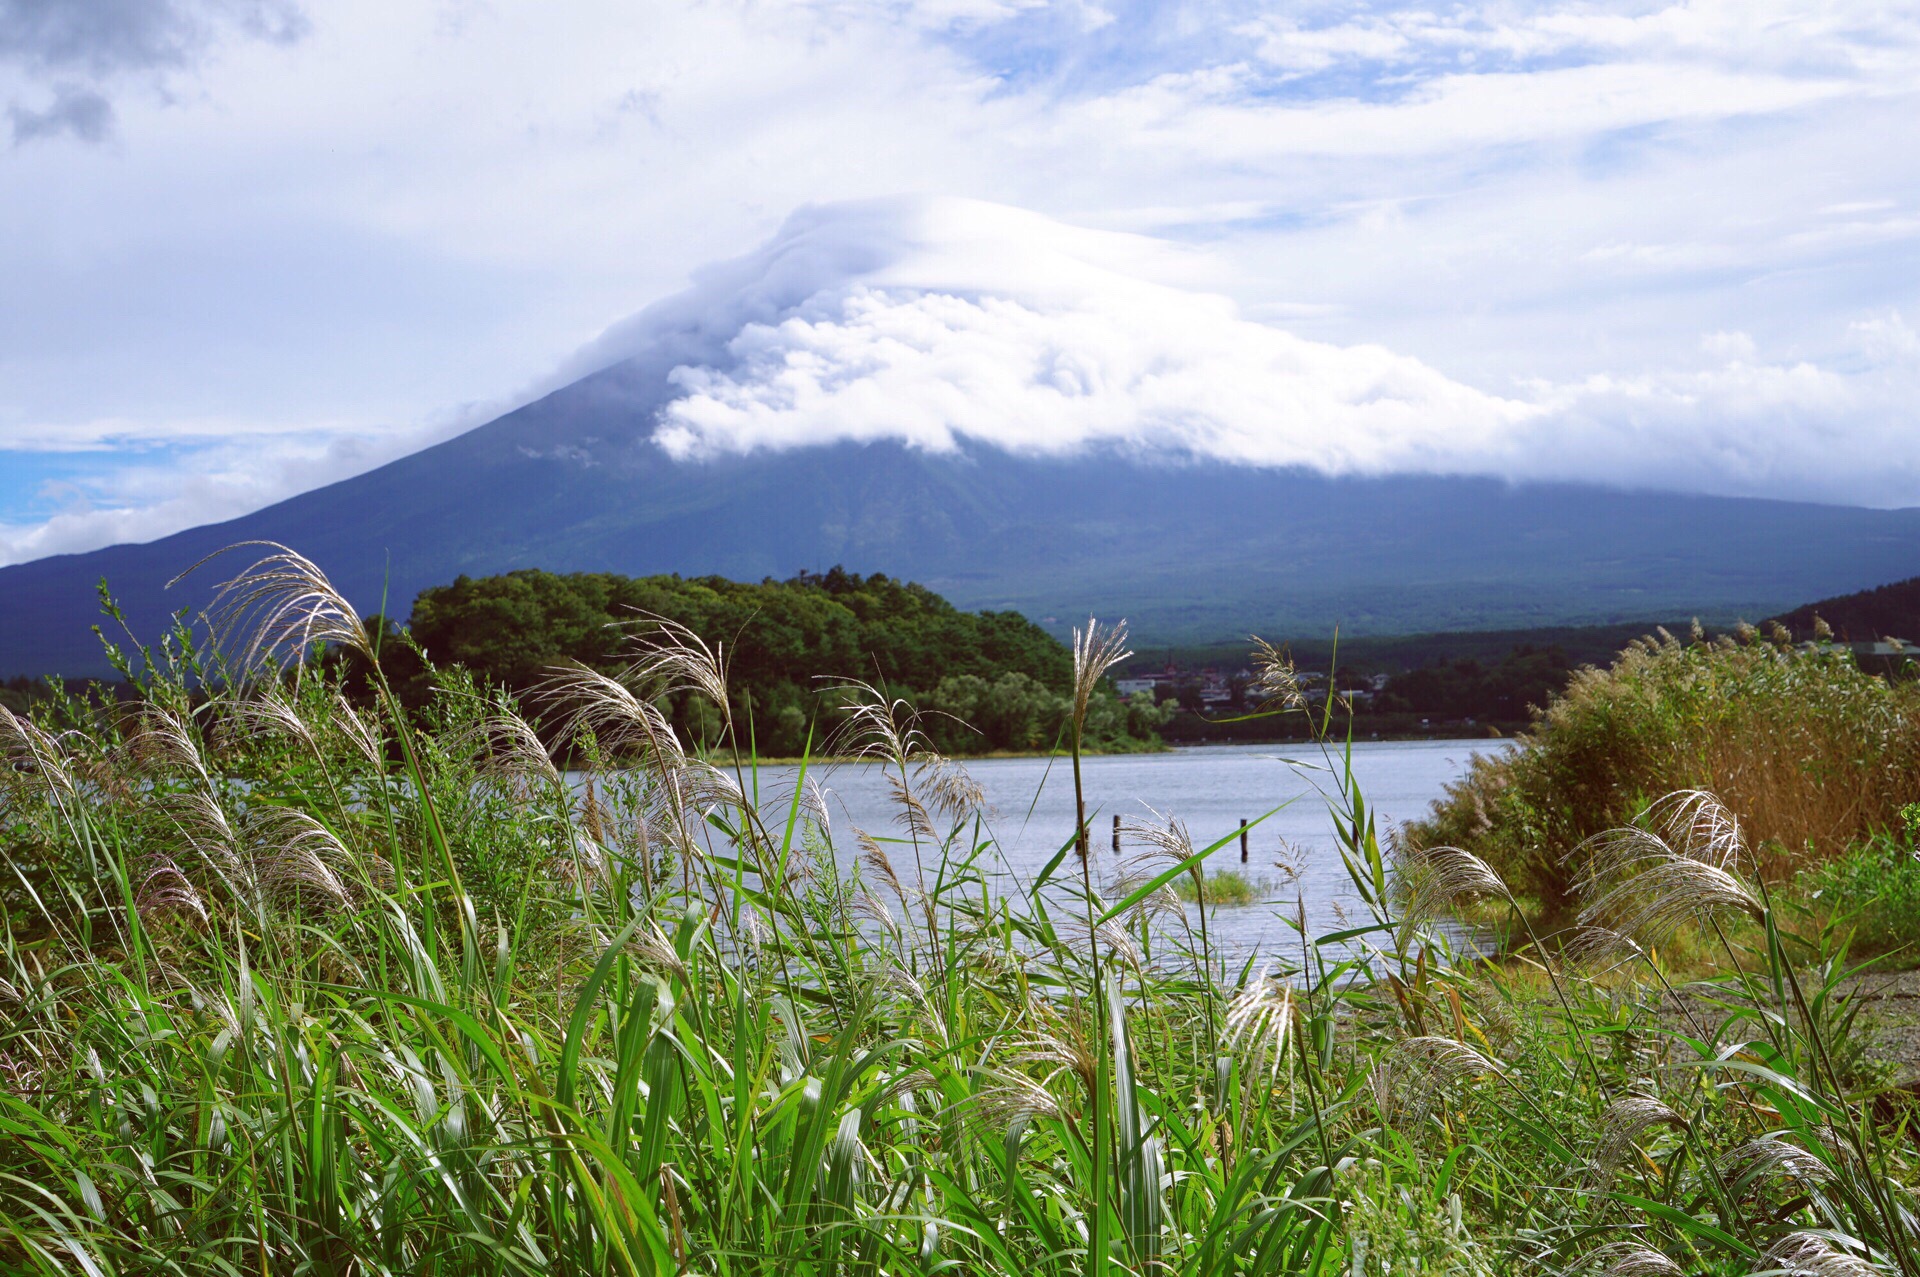 富士山 一日游的正确打开方式 第一次去见富士山，如果想多看看那边的风景，可以报个一日游的团。  💛出